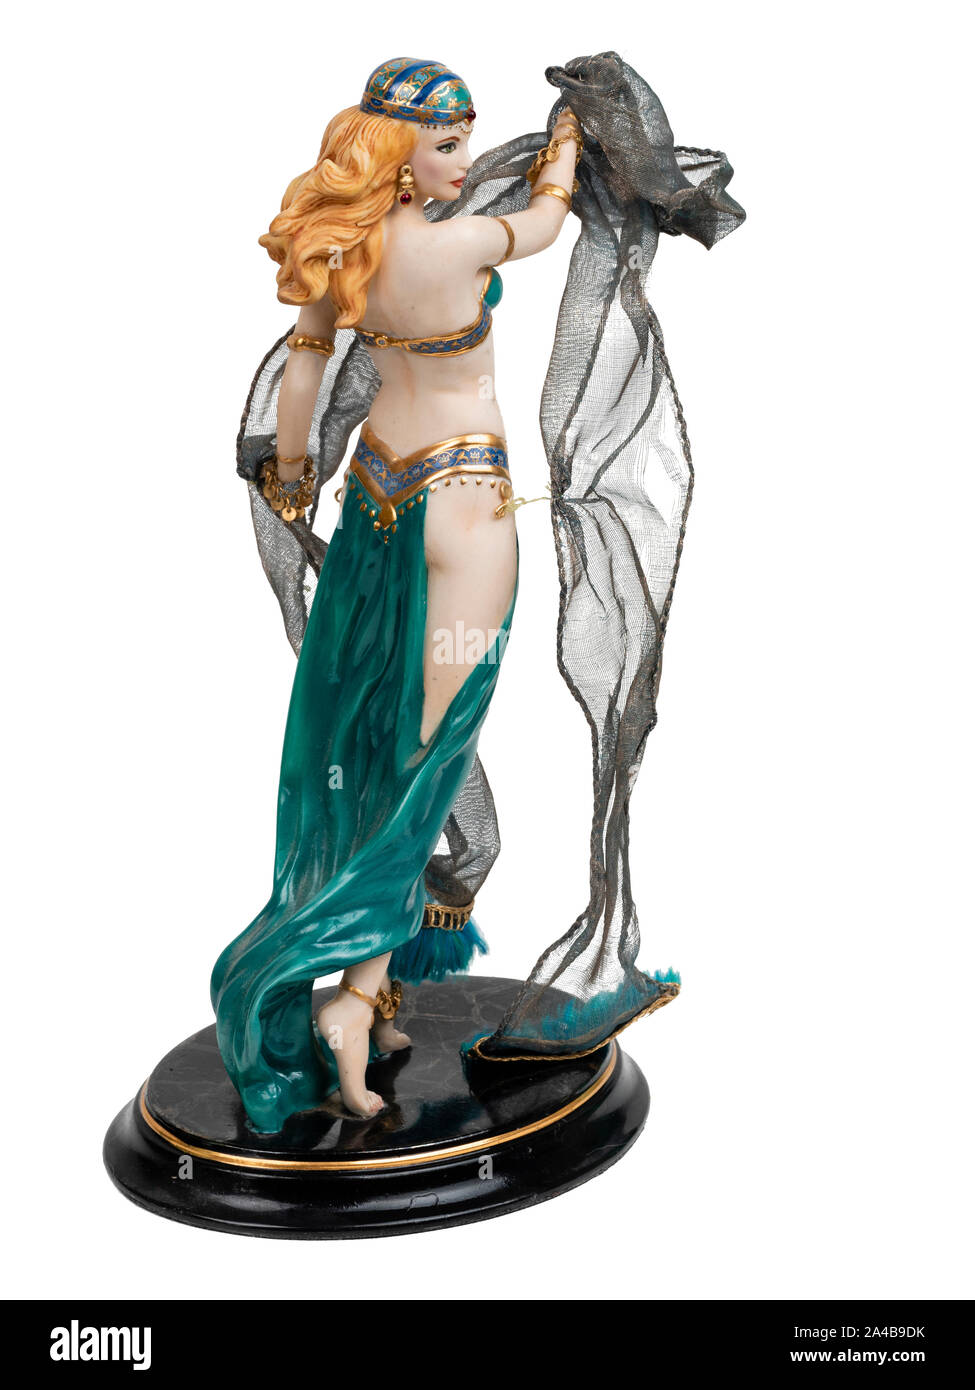 Dipinto a mano modello di porcellana figurina di Salome e La danza dei sette veli su sfondo bianco Foto Stock